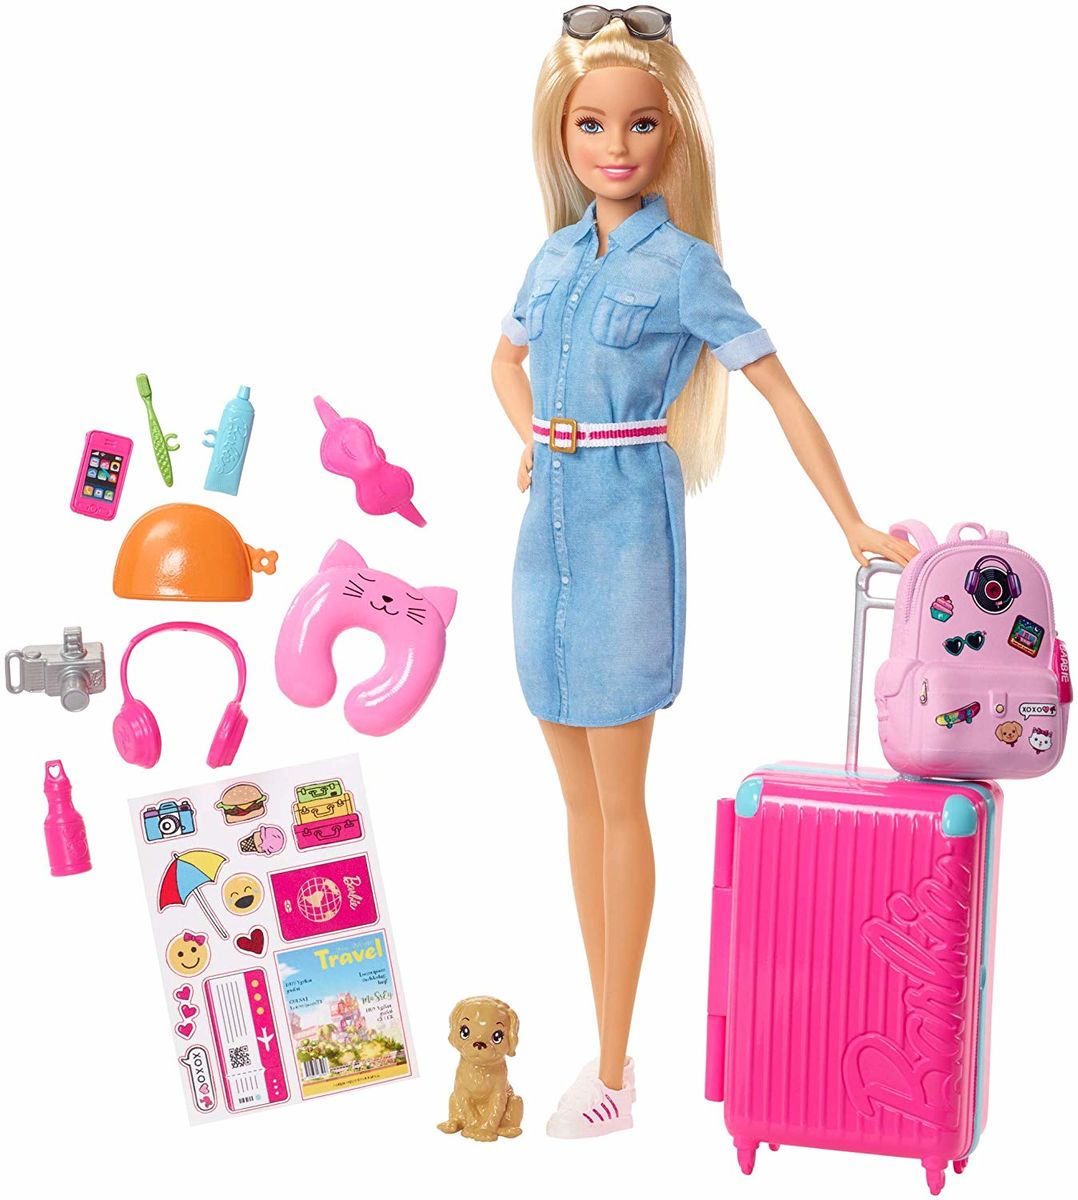 Matkustus Barbie sekä Tarvikkeet